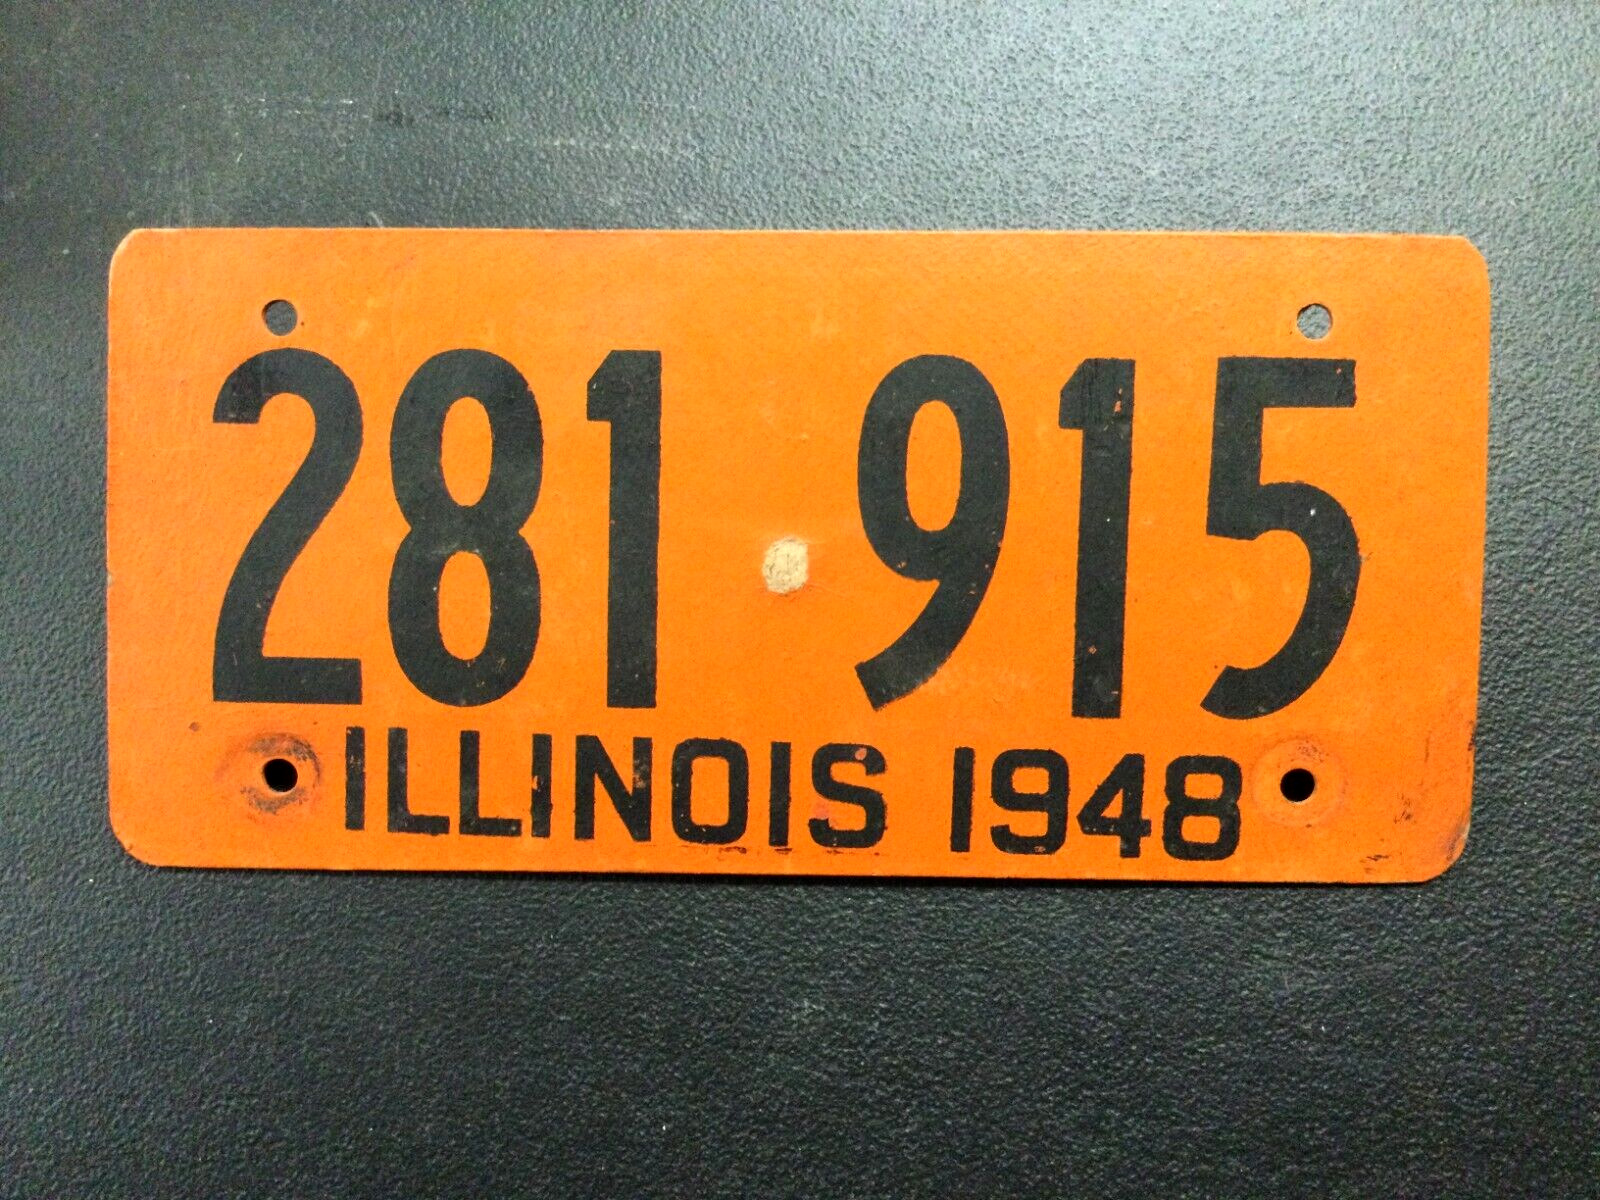 1948 ILLINOIS FIBERBOARD LICENSE PLATE 281 915